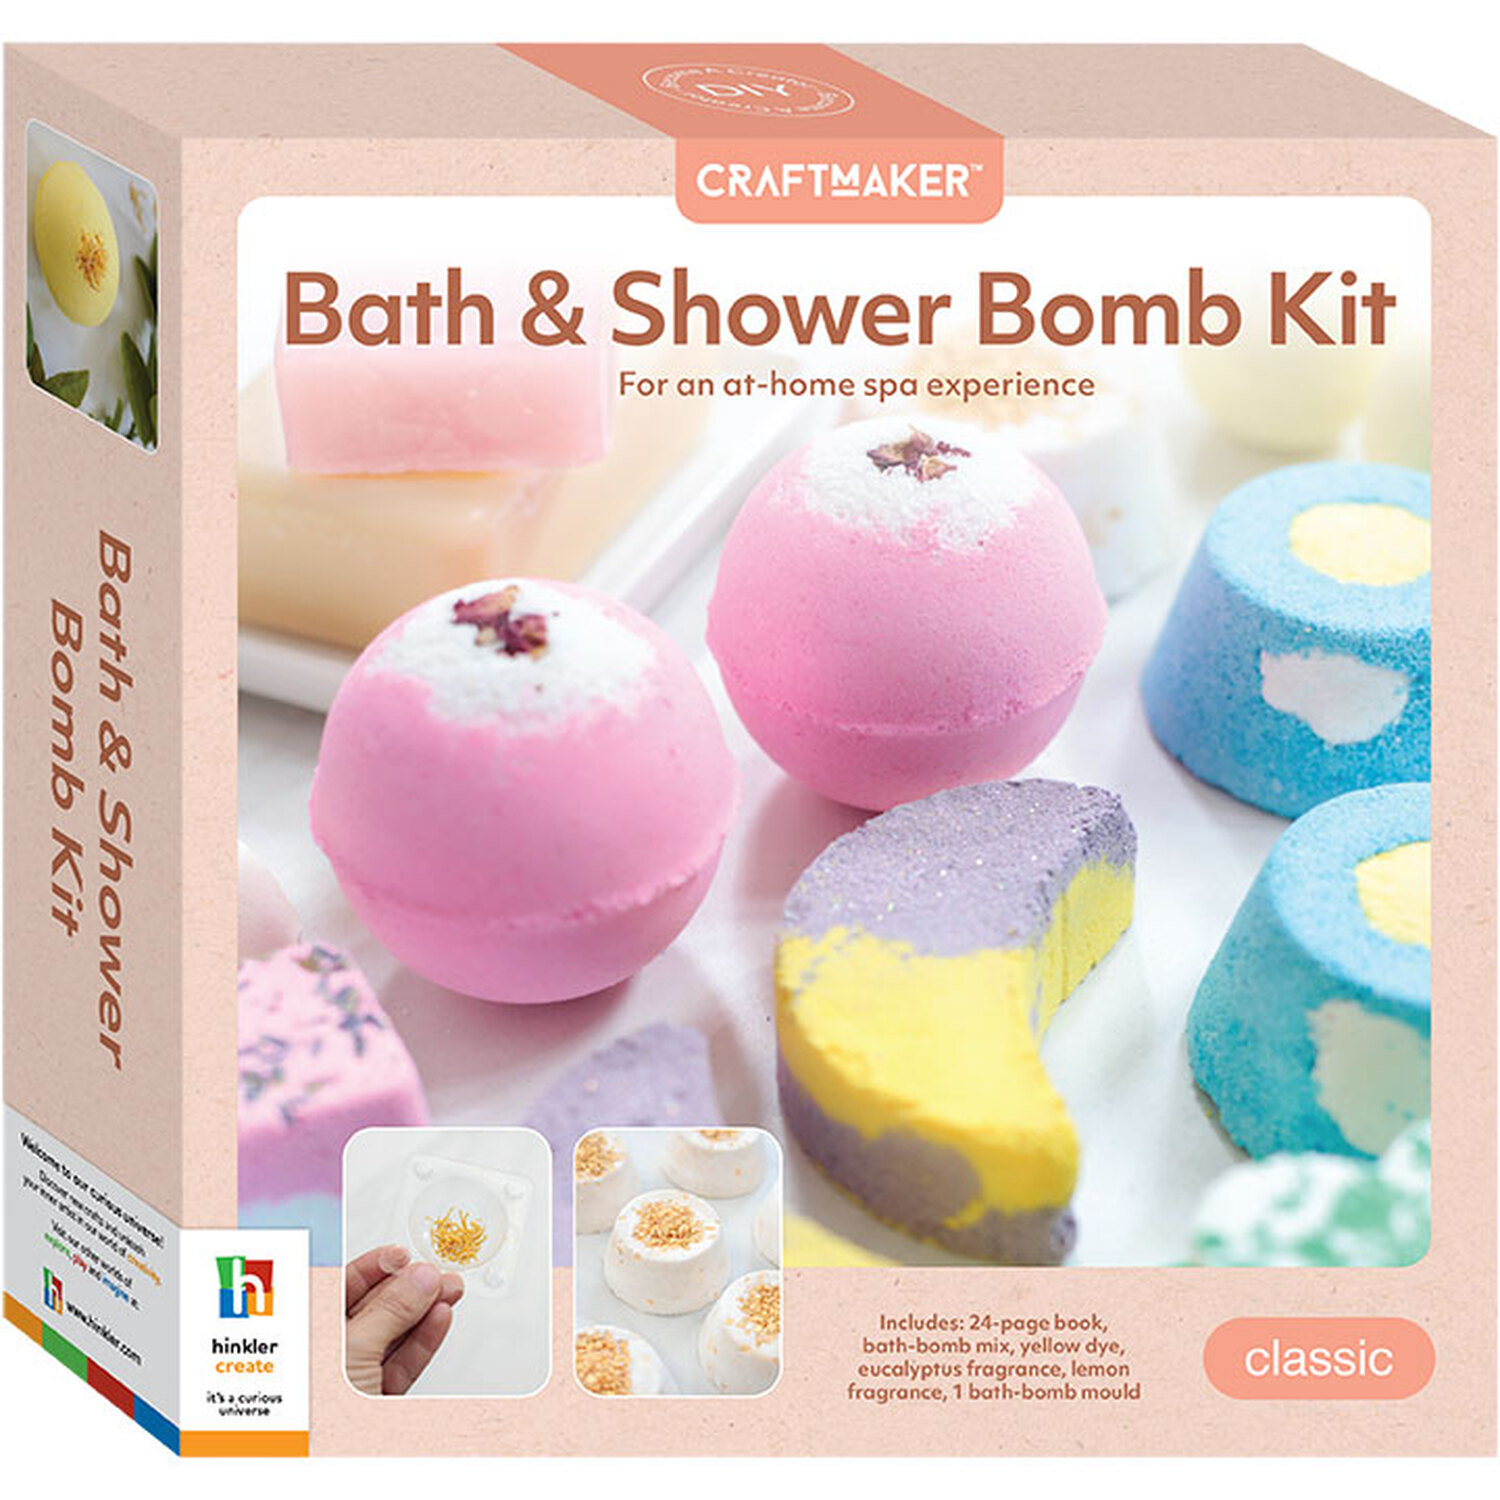 Hinkler Craft Maker Make Your Own Bath and Shower Bomb Kit Image